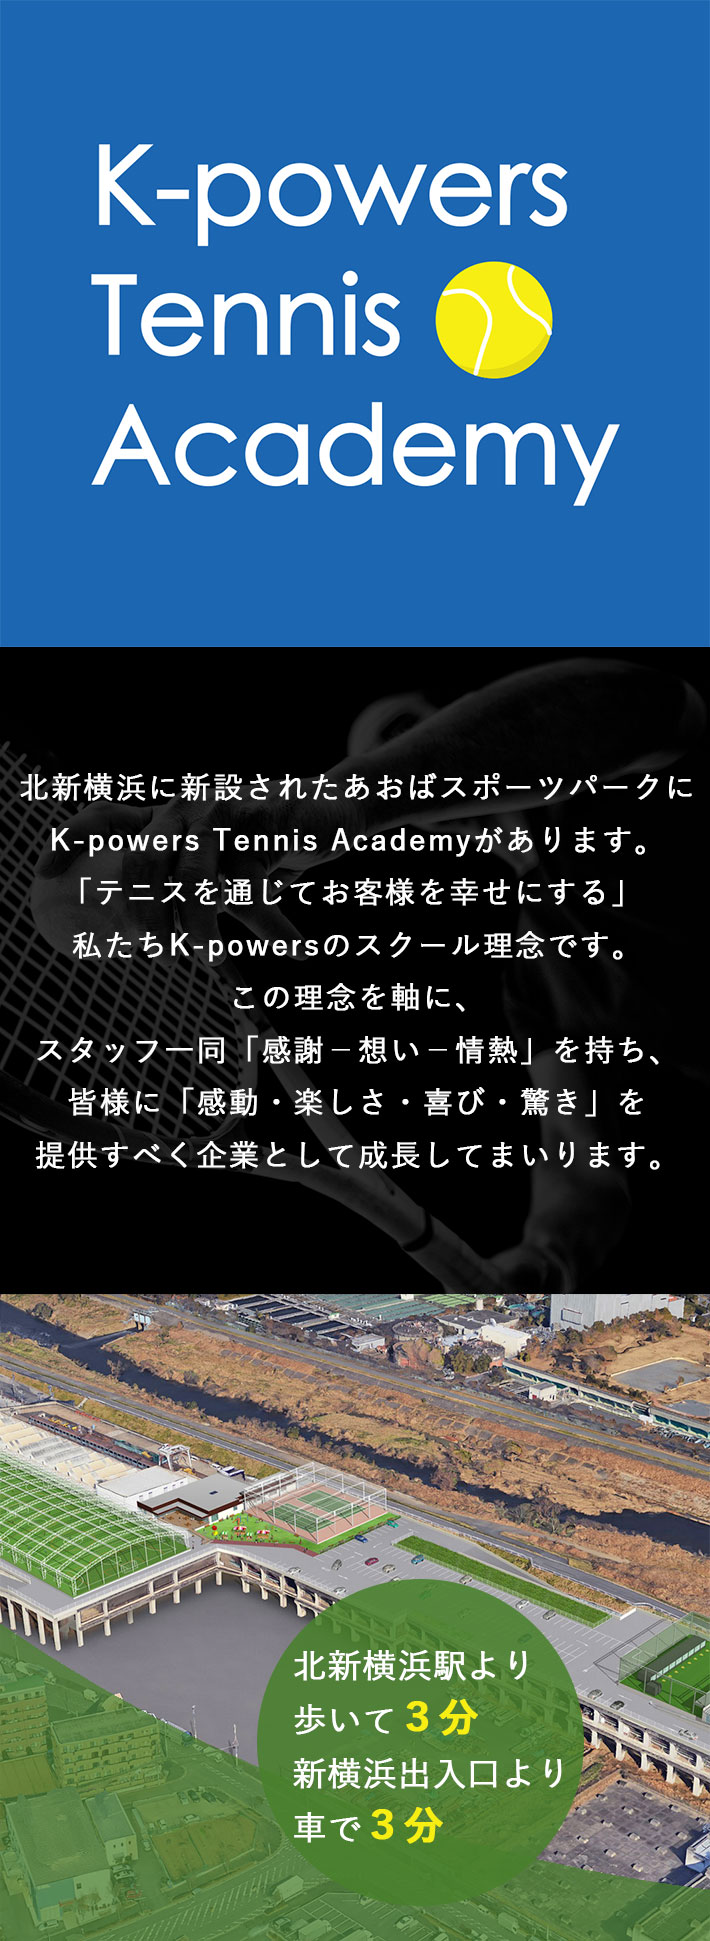 2019年2月OPEN! 北新横浜に新設されるあおばスポーツパーク（新羽車両基地）にK-powers Tennis Academyが開校しました。「テニスを通じてお客様を幸せにする」私たちK-powersのスクール理念です。この理念を軸に、スタッフ一同「感謝－想い－情熱」を持ち、皆様に「感動・楽しさ・喜び・驚き」を提供すべく企業として成長してまいります。